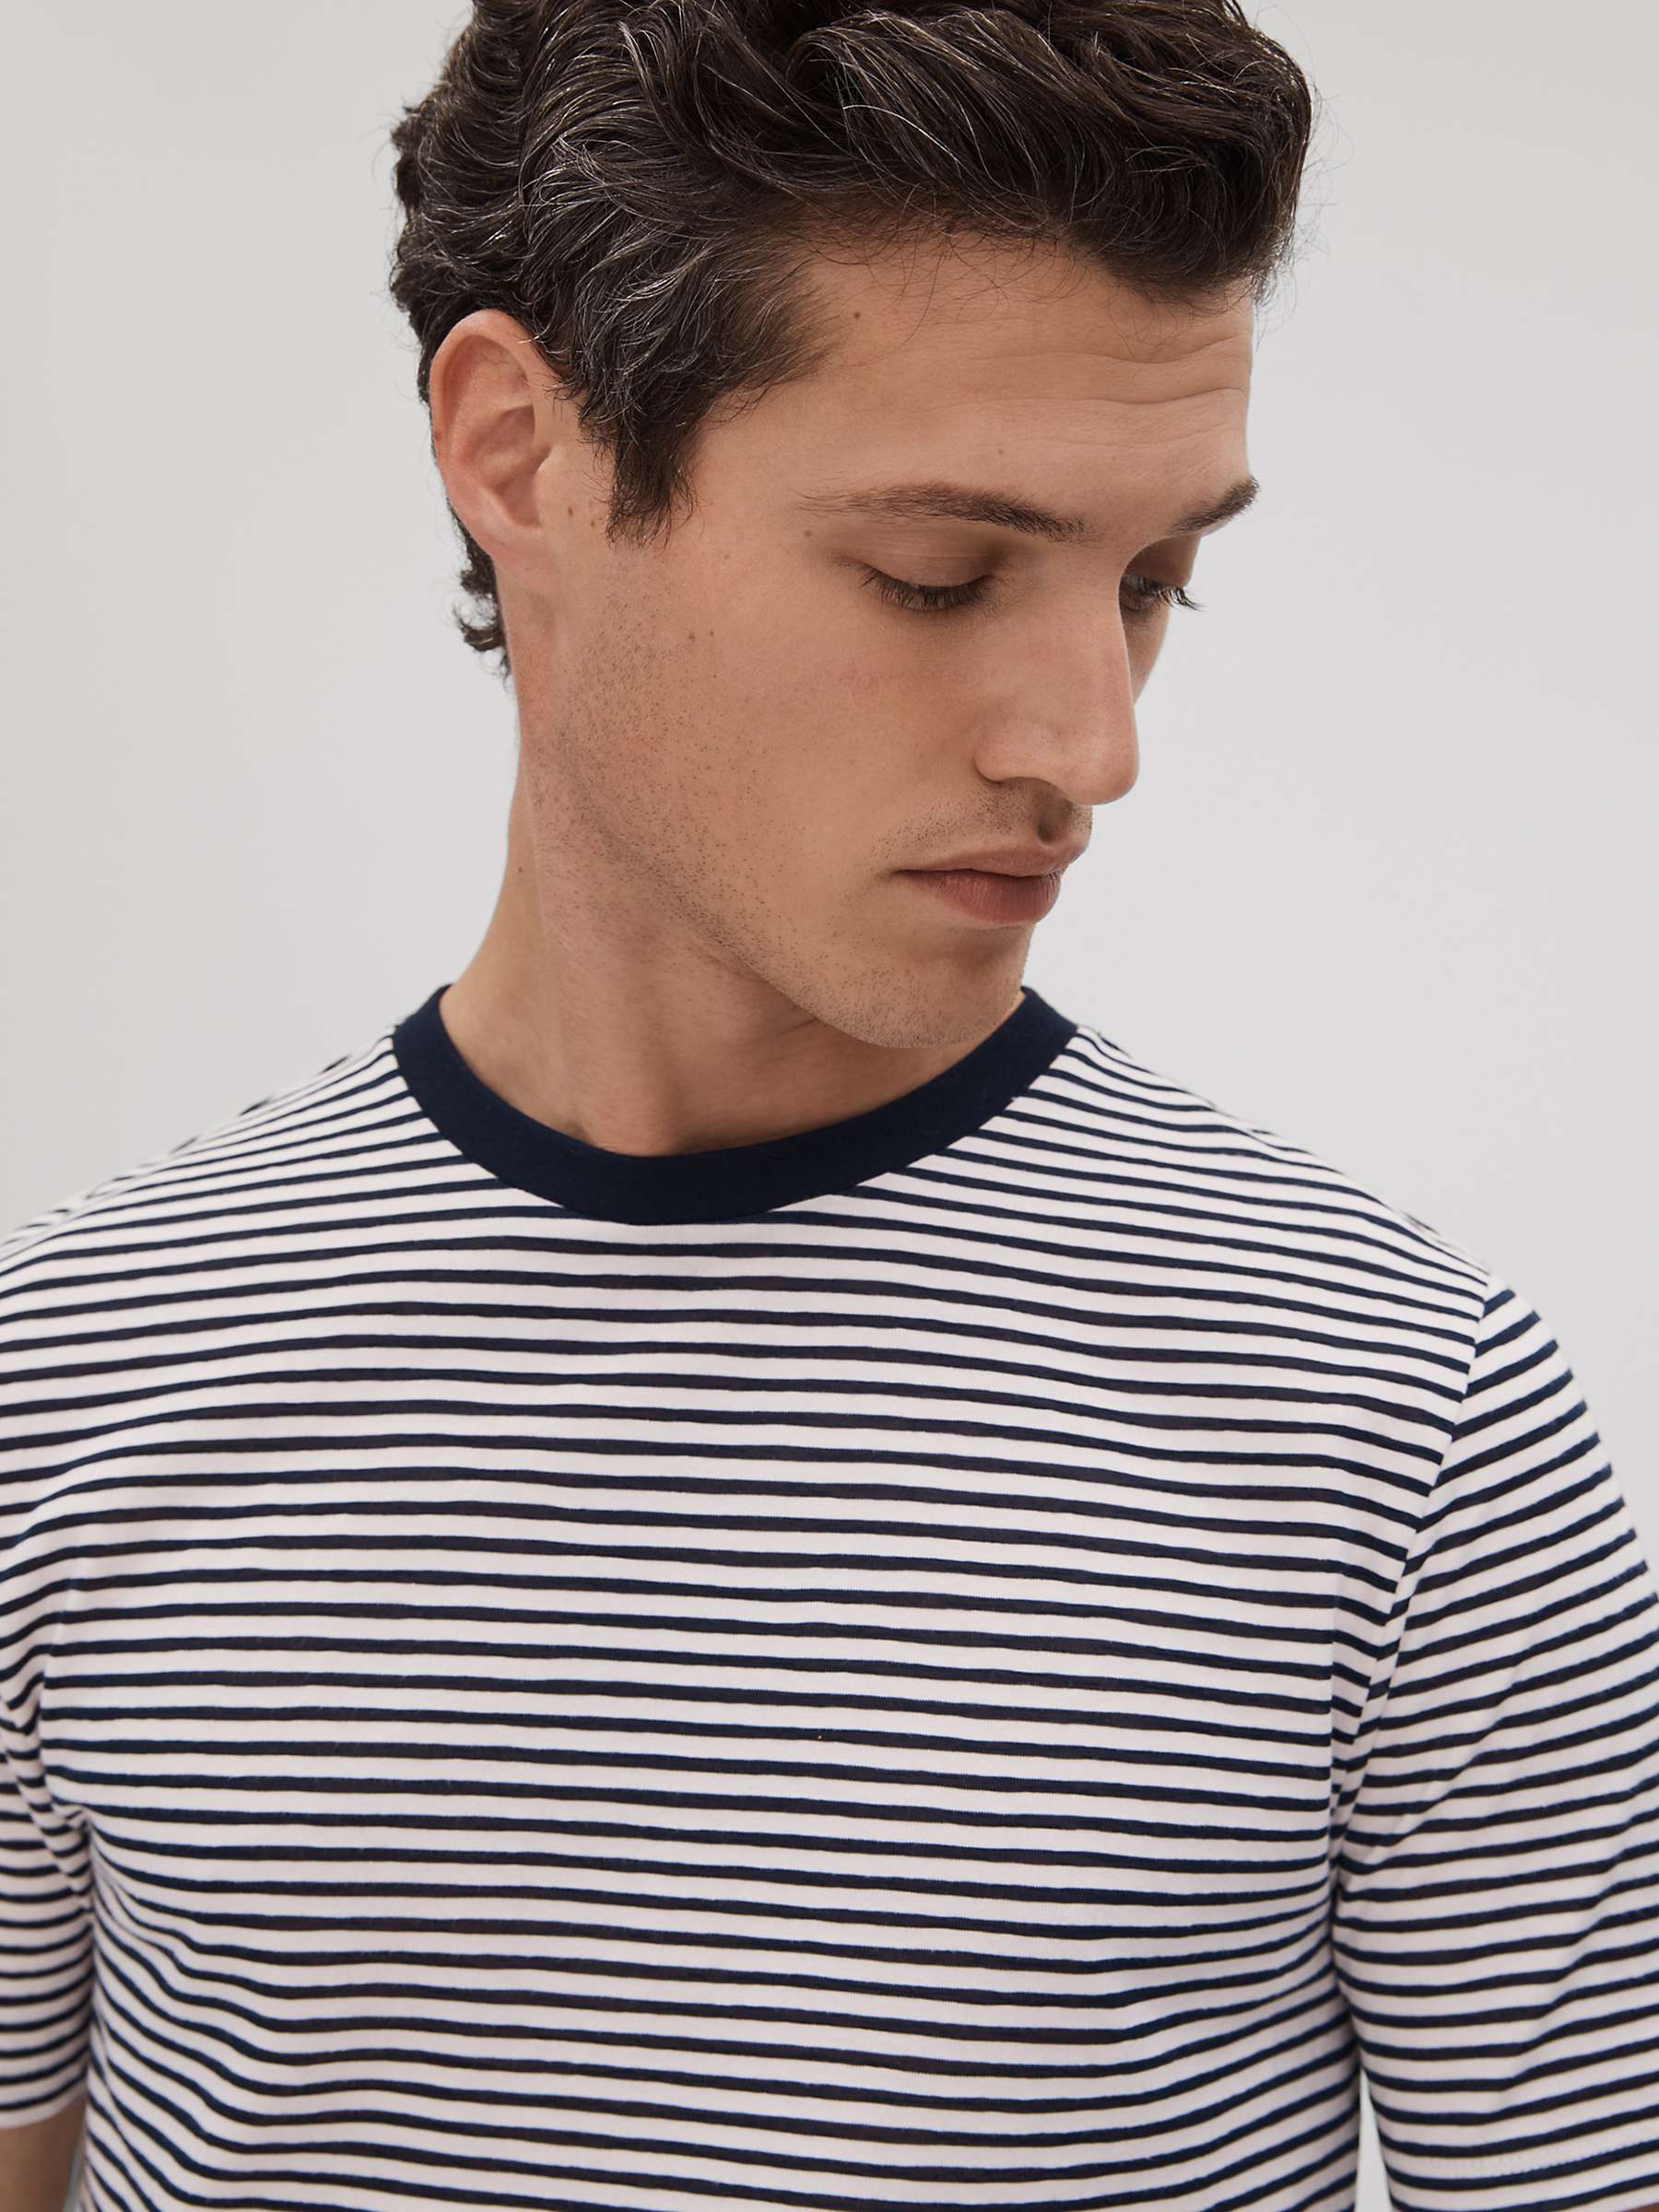 Buy Reiss Keats Short Sleeve Stripe T-Shirt, Navy/White Online at johnlewis.com